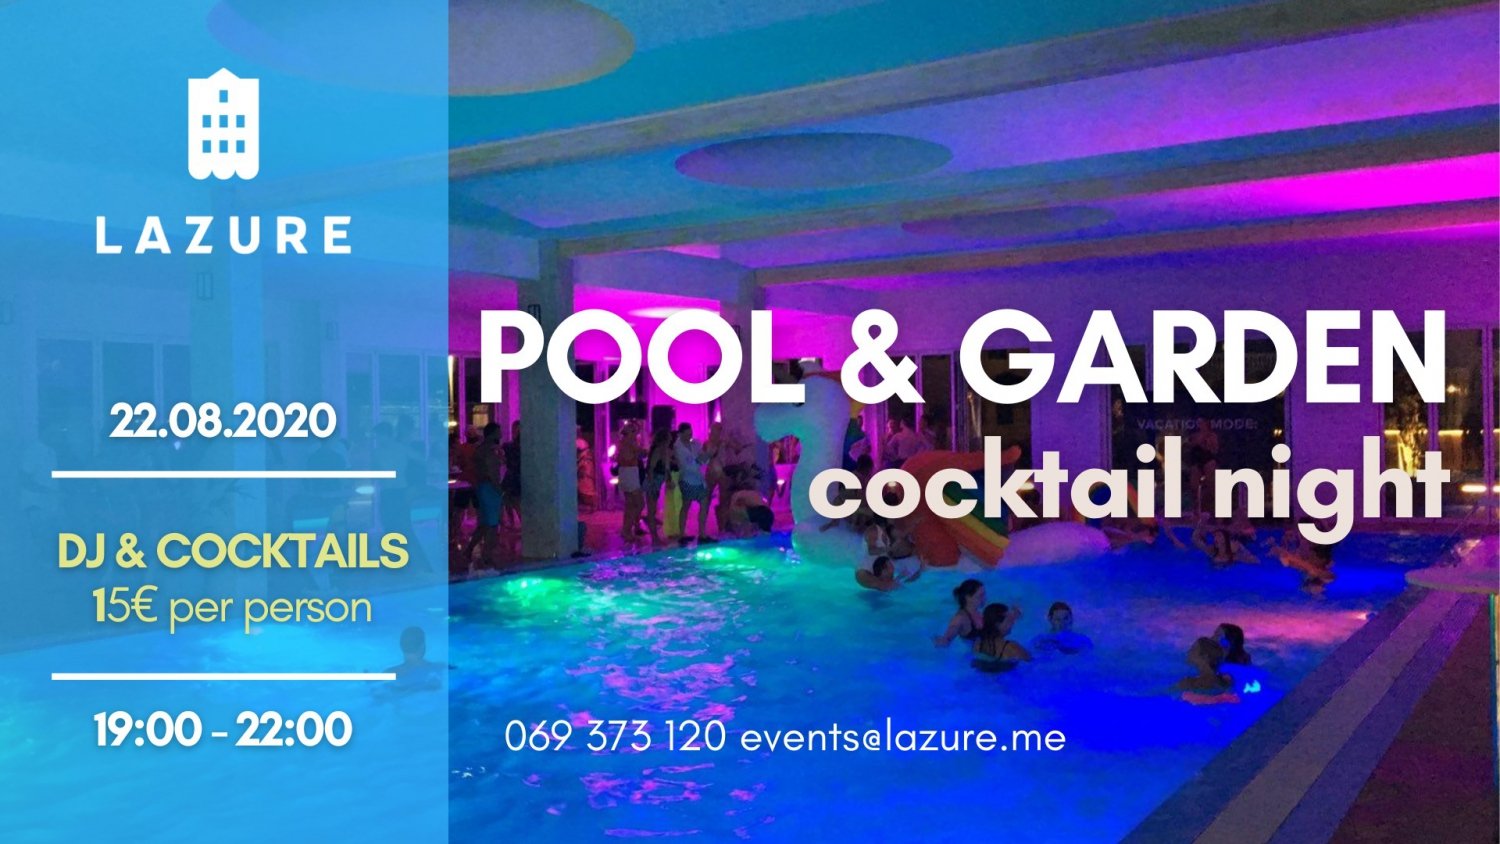 Pool & Garden Cocktail Night at Lazure